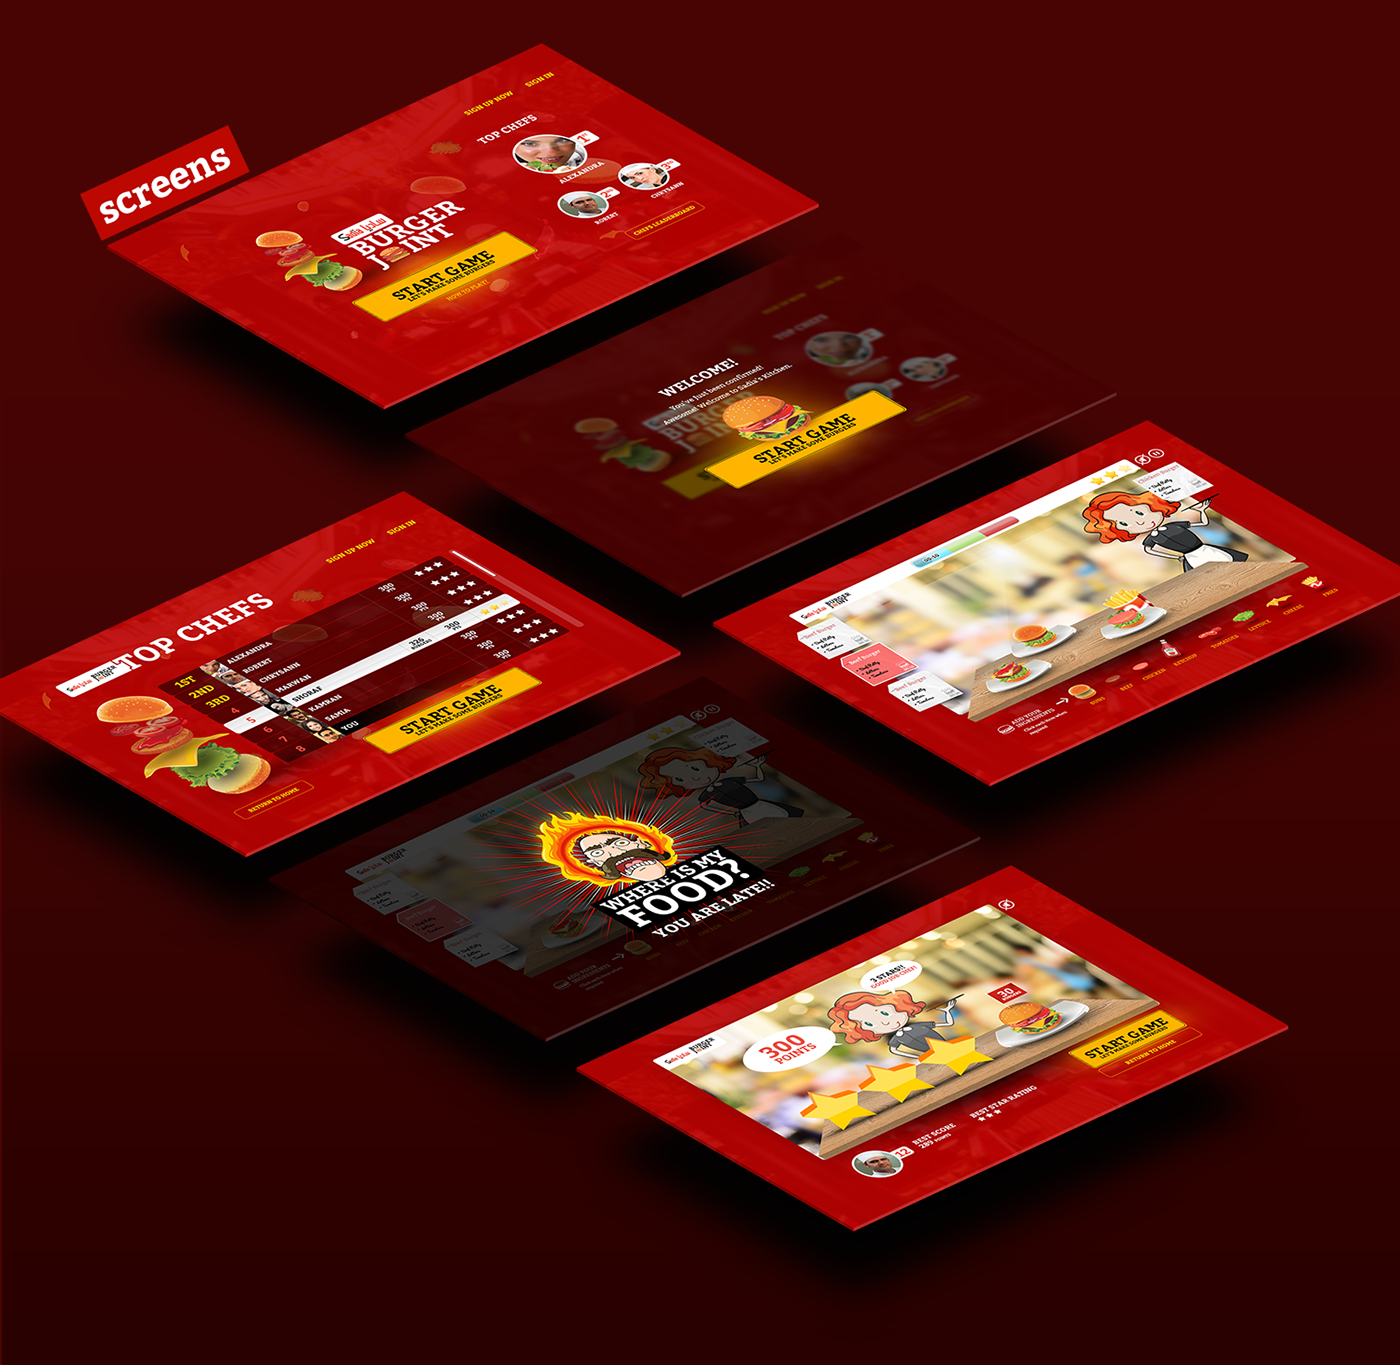 burger Patties chicken beef game UI online app